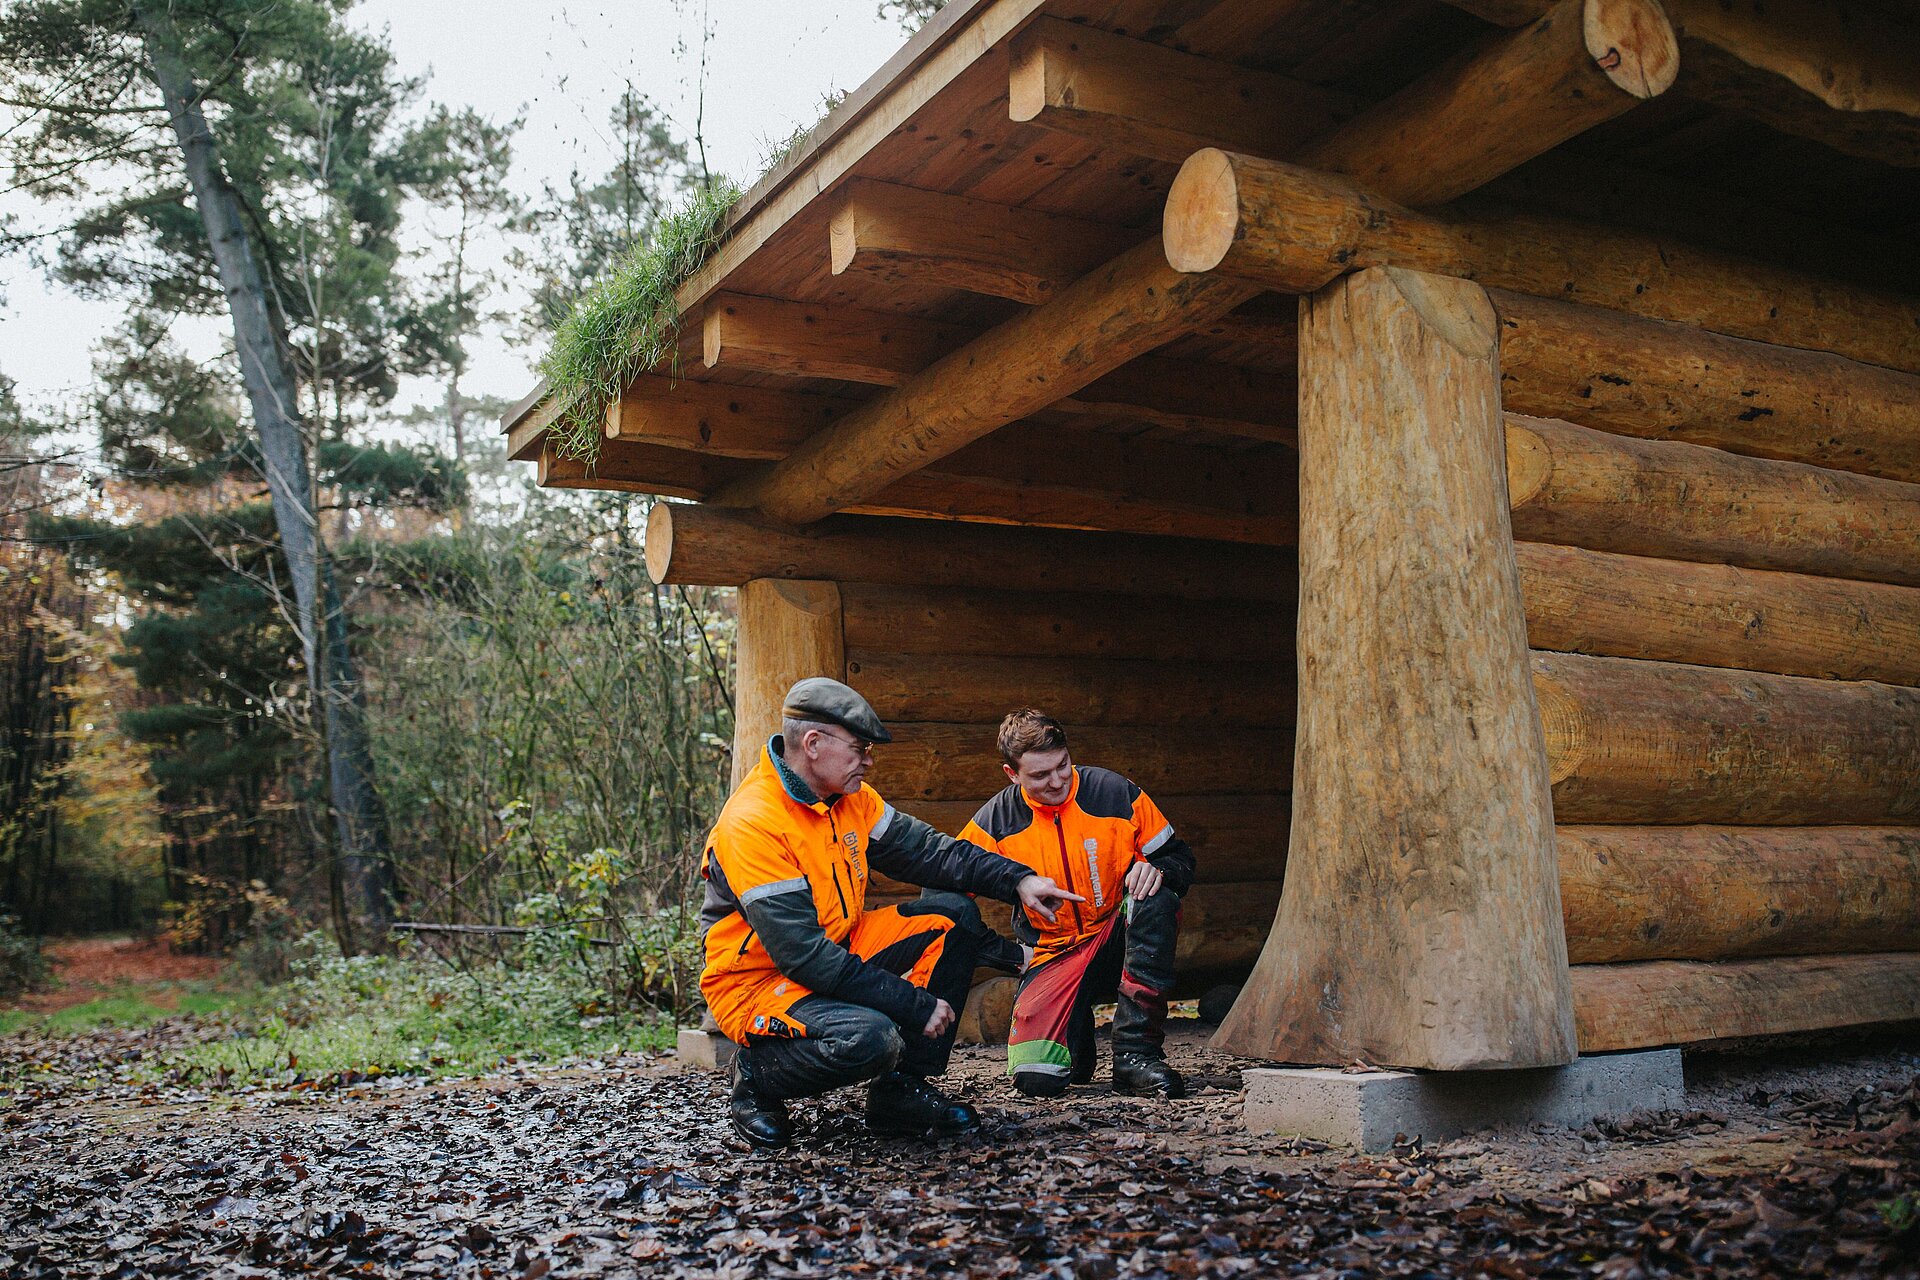 Die RVR-Auszubildenden haben diese Schutzhütte im RVR-Waldgebiet Haard unter fachlicher Anleitung selbst gebaut; RVR-Forstwirt Martin Banuscher (links) kontrolliert sie zusammen mit einem Auszubildenden im RVR-Waldgebiet Haard im Dezember 2020.